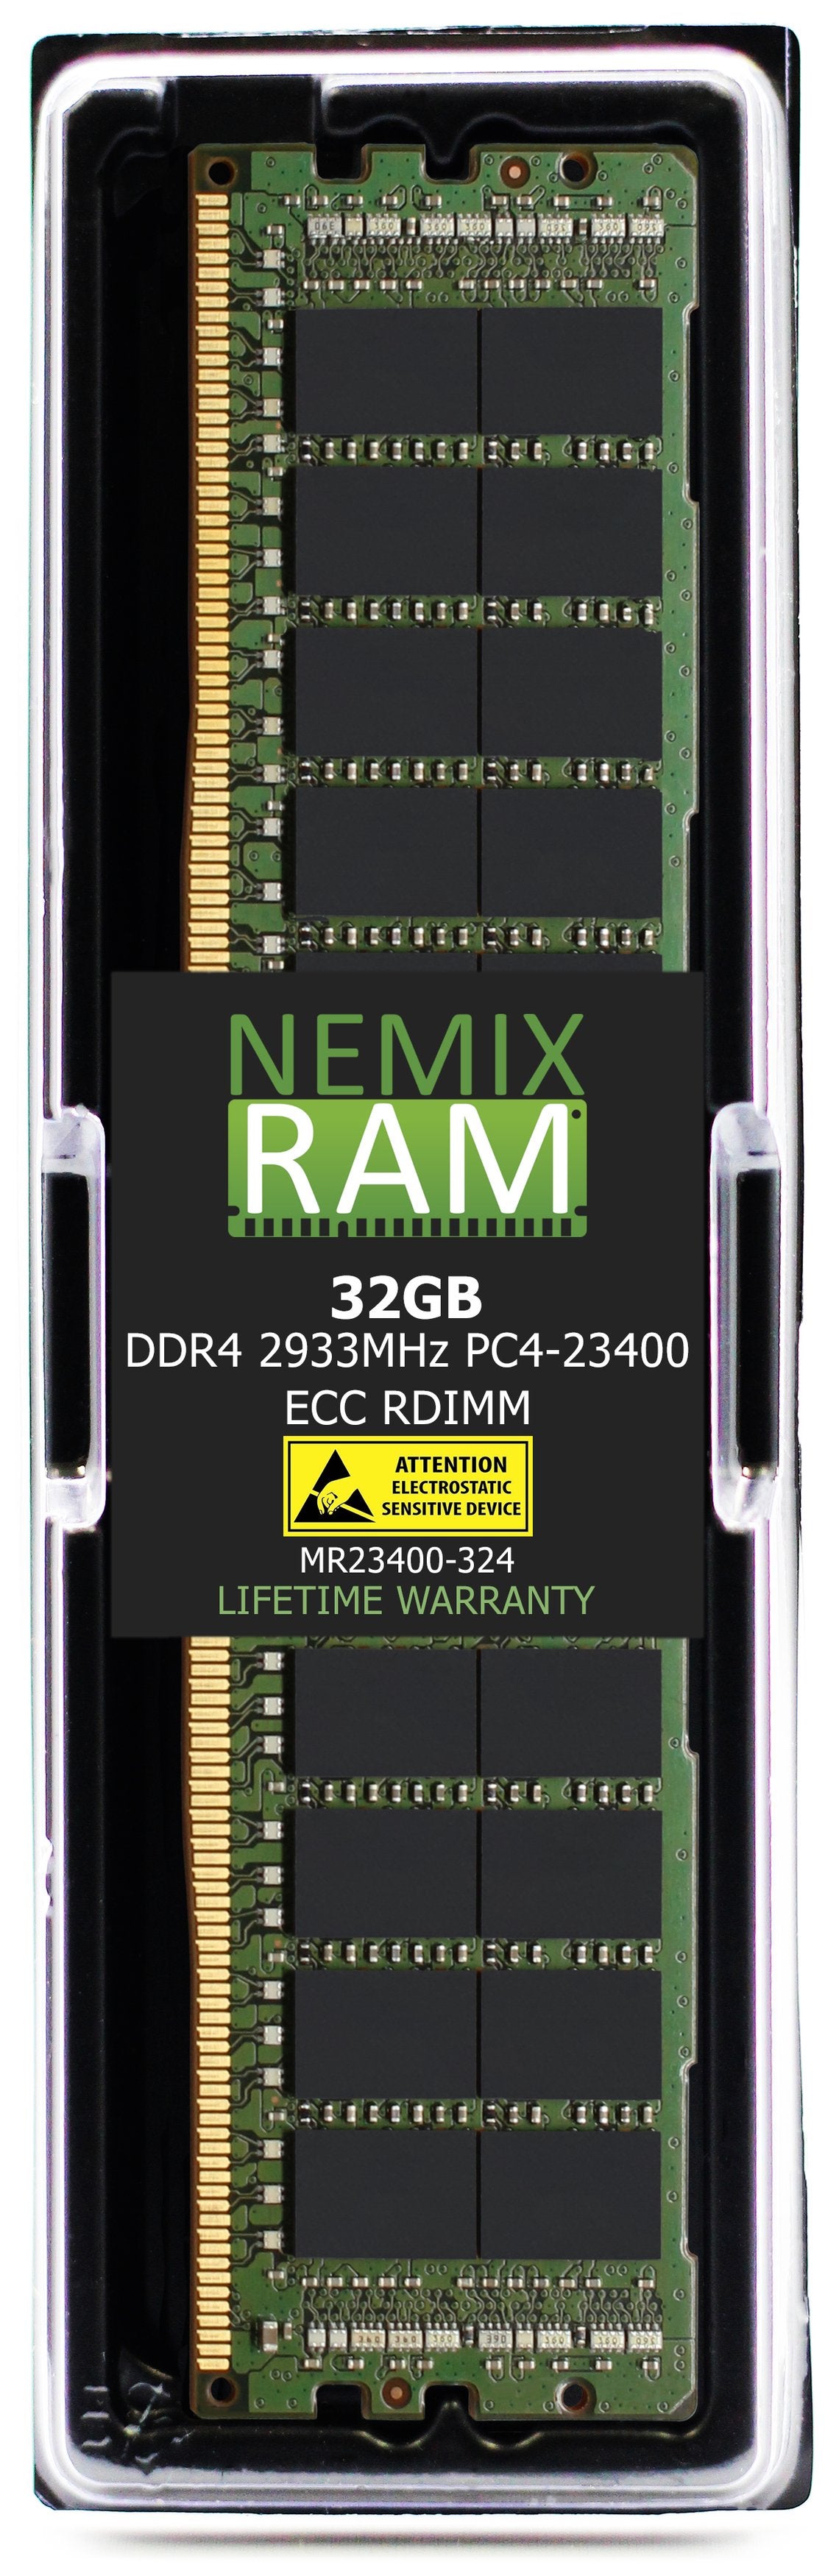 Hynix HMA84GR7JJR4N-WM 32GB DDR4 2933MHZ PC4-23400 RDIMM Compatible Memory Module